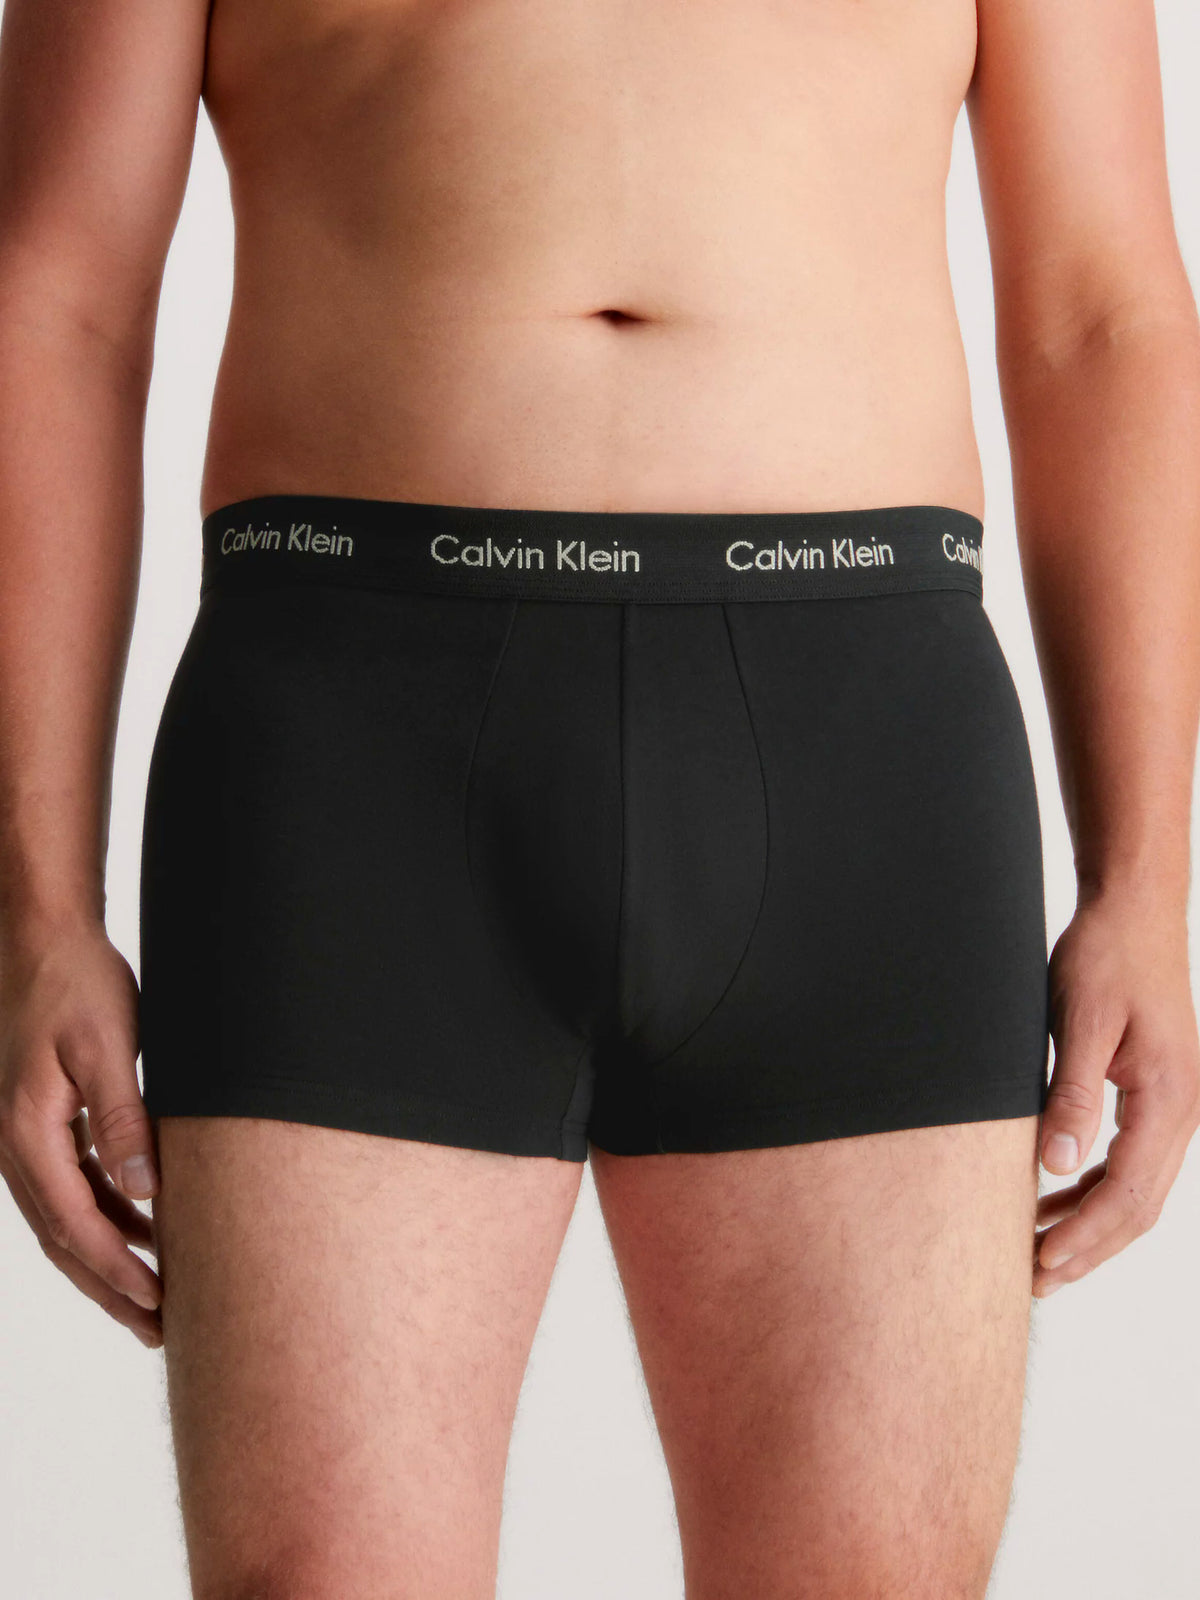 Mens Calvin Klein Boxer Shorts Low Rise Trunks 3 Pack, 03, U2664G, B- Eclyps, Mcca Orange, OLV Brnch LG